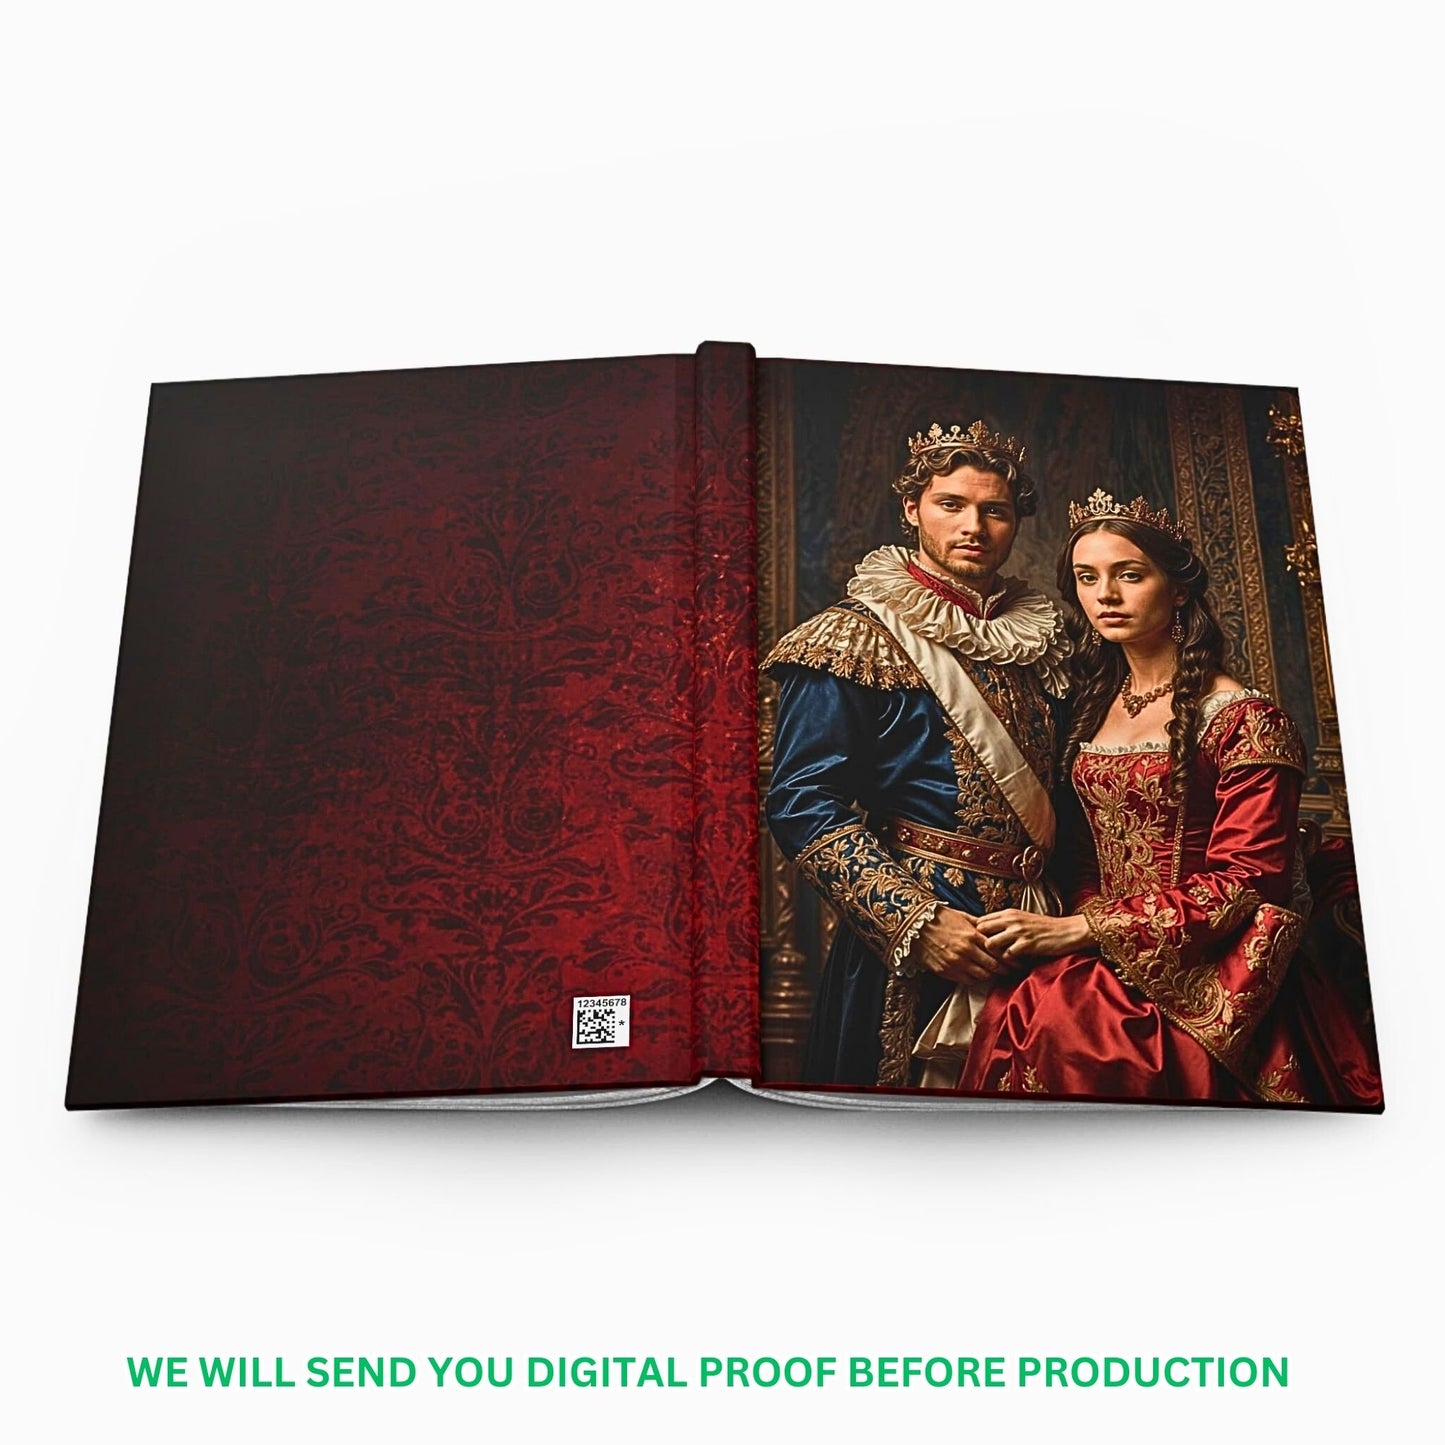 Custom Journal, Custom Royal Couples Journal from Photo, Renaissance Journal, Historical Journal, (50)